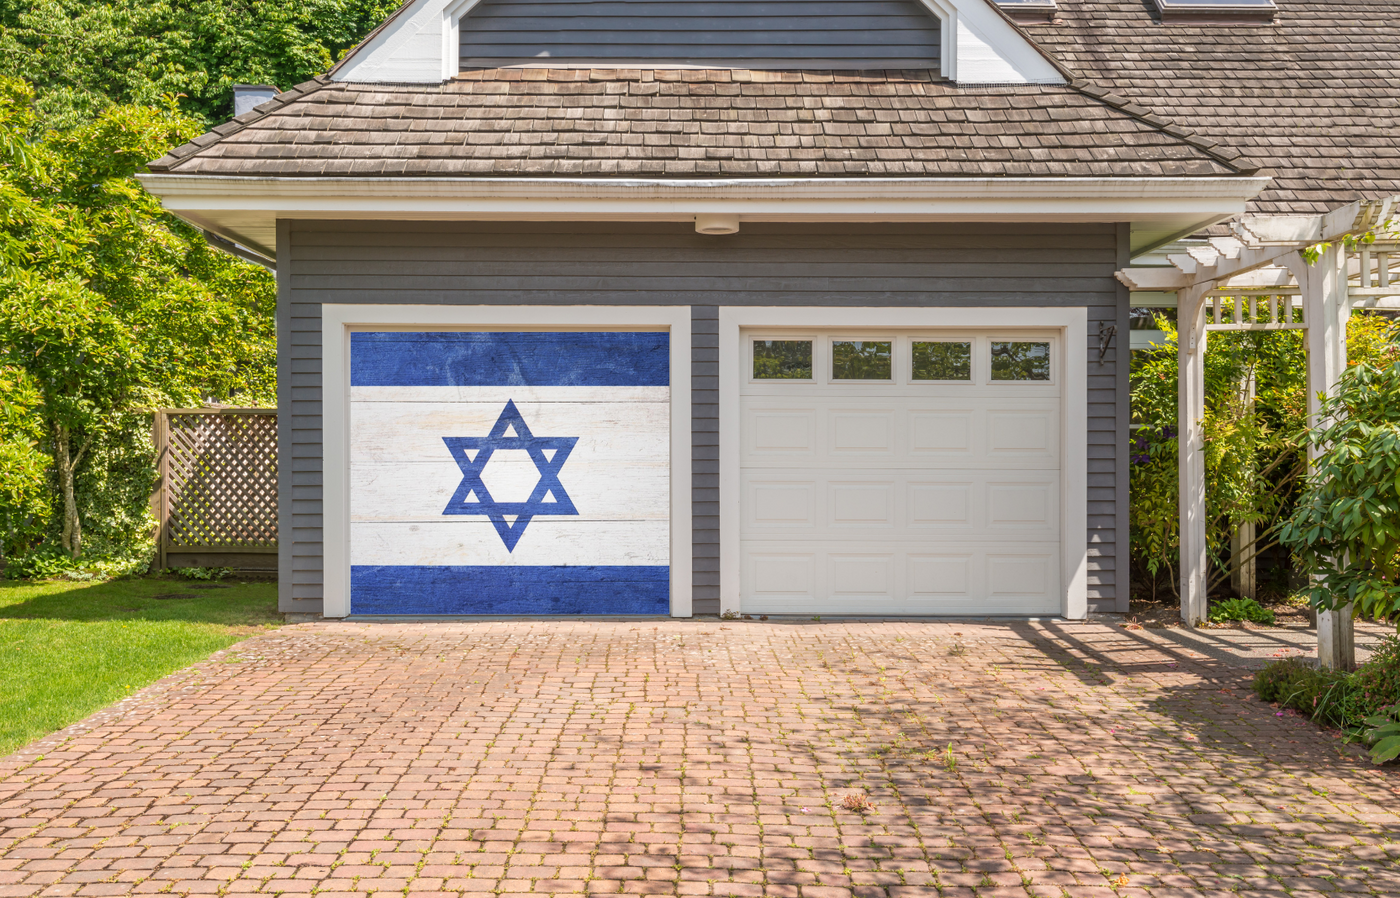 Israel Flag On Wooden Garage Door Wrap Cover Decoration Banner Backdrop